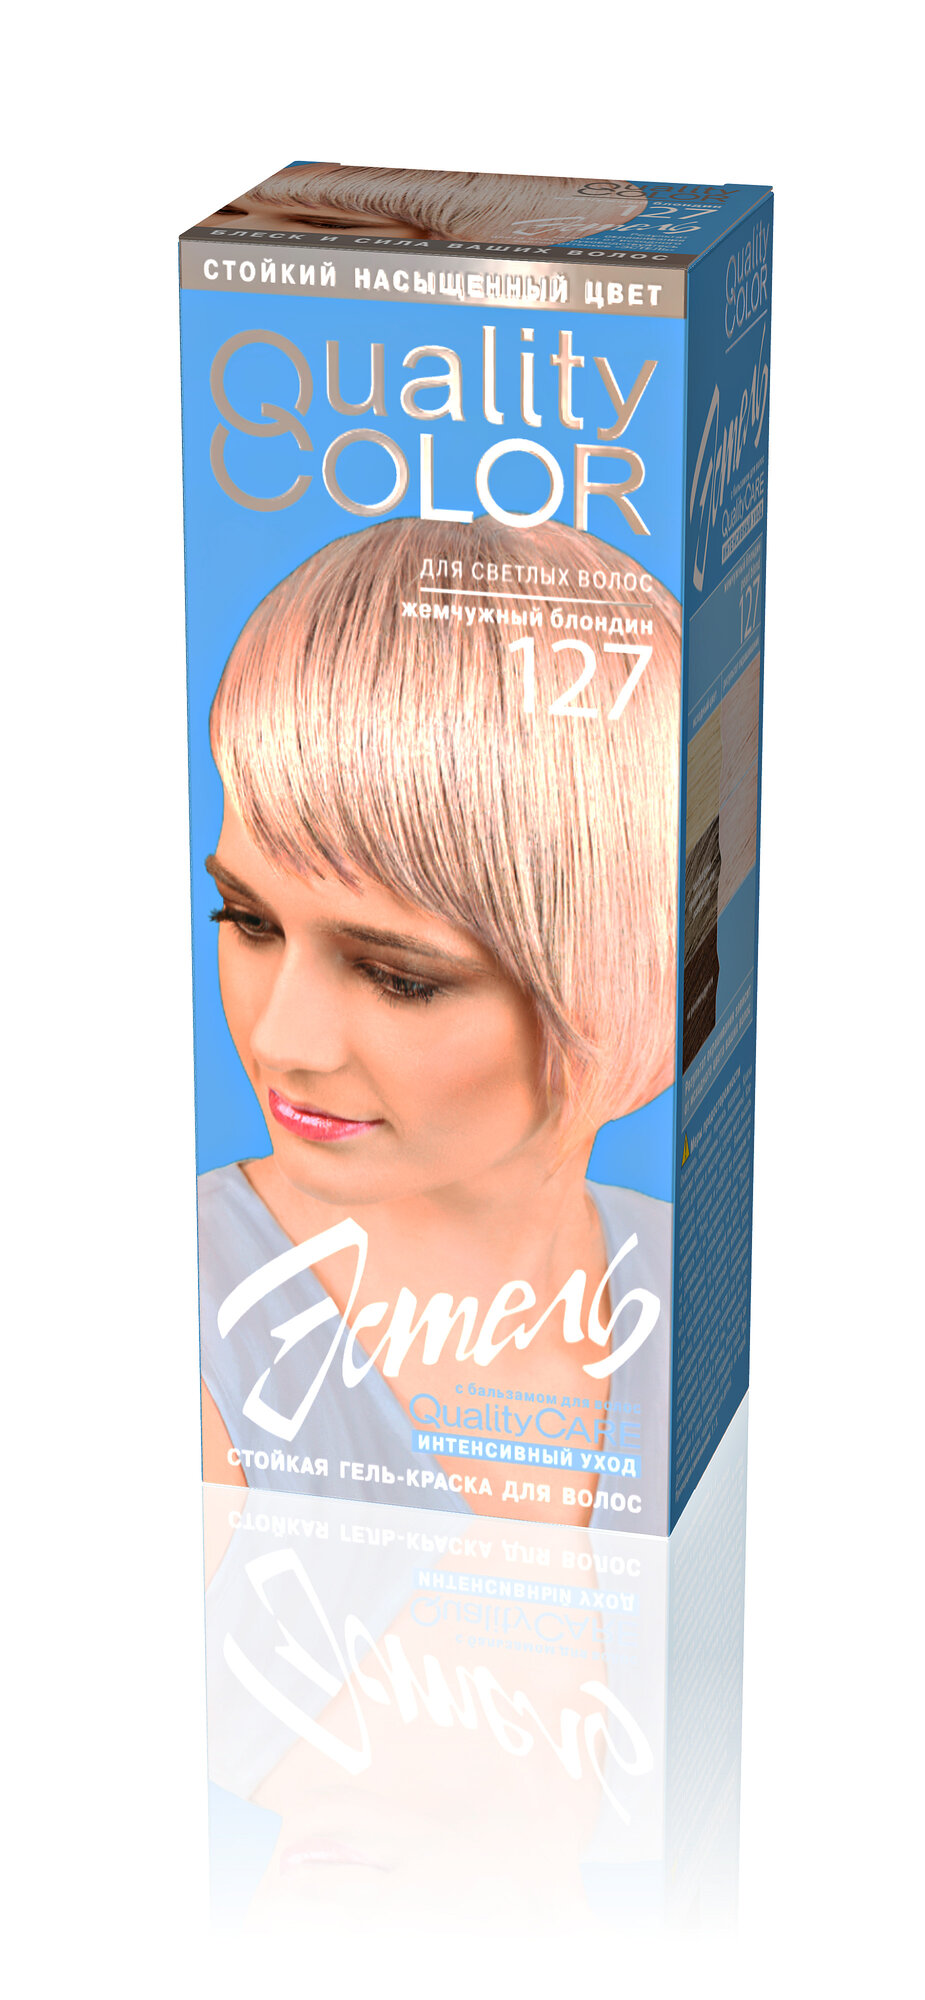 ESTEL Quality Color стойкая гель-краска для волос, 127 жемчужный блондин, 50 мл